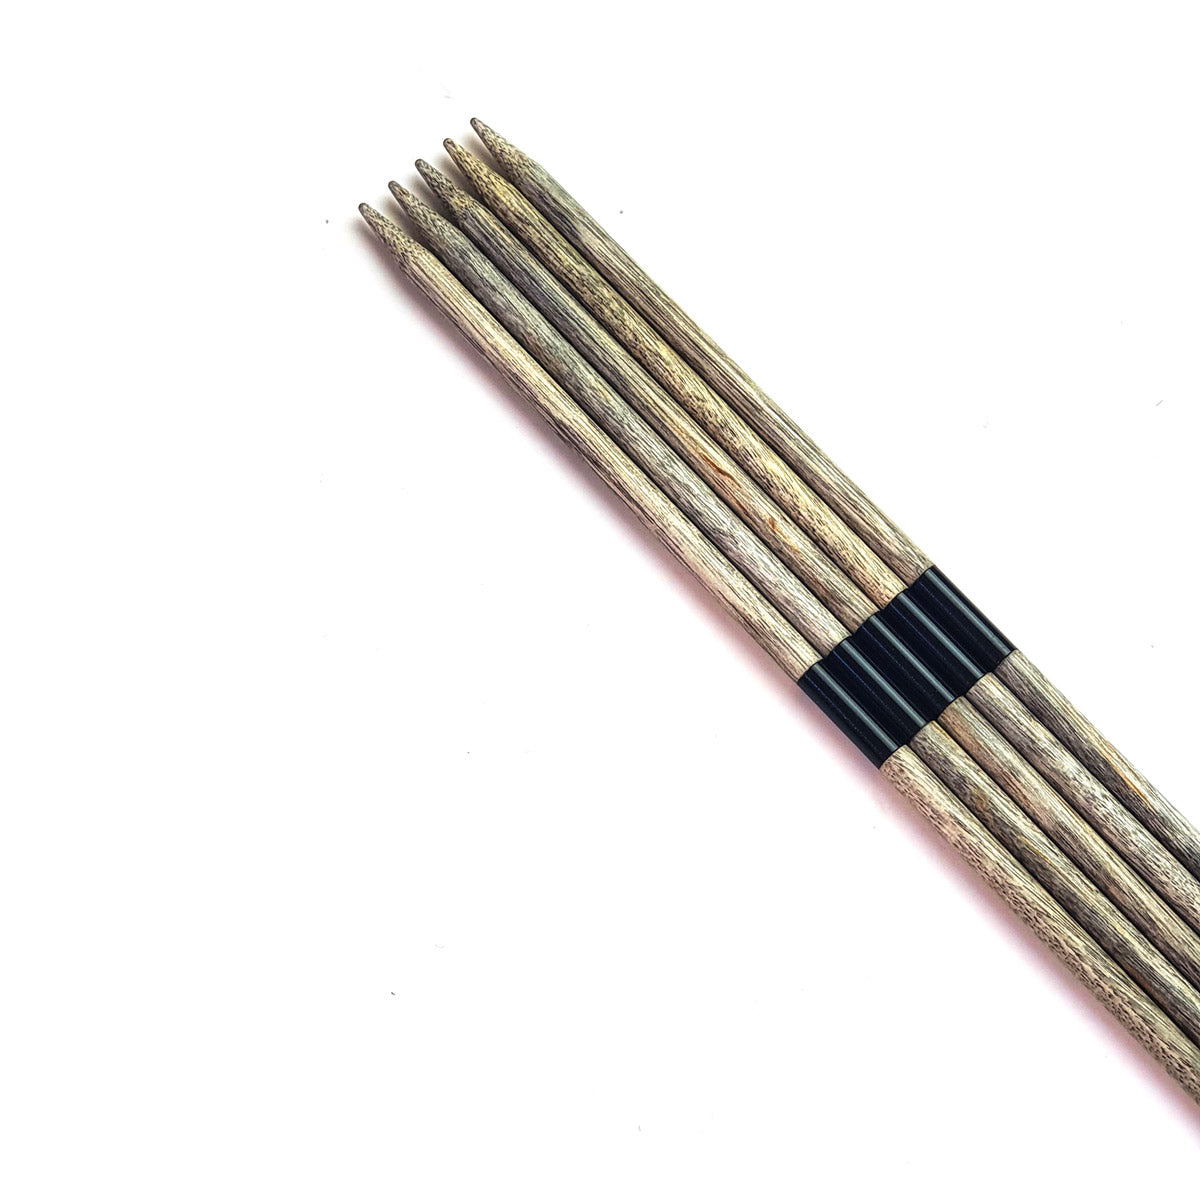 Double Pointed Needles 8" Lykke Driftwood 100% Birchwood, κατασκευασμένο στο Νεπάλ